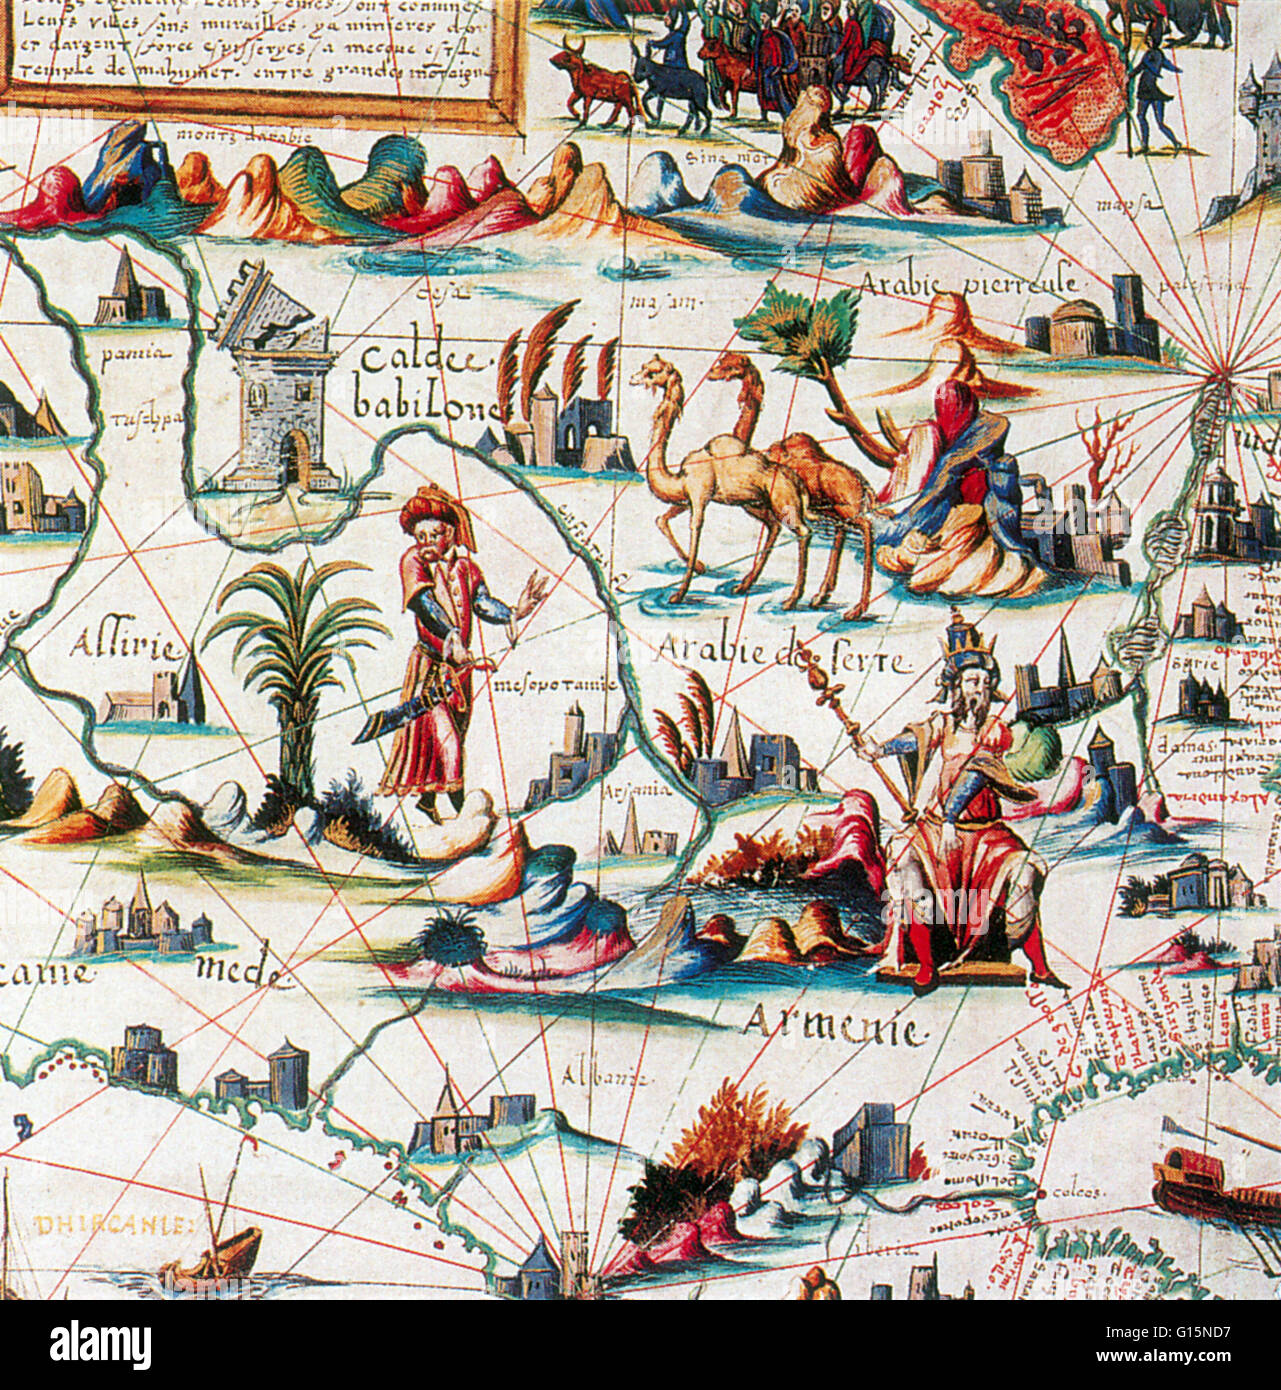 L'Asie centrale ('Arabia') sur Pierre Desceliers's World Map, 1550. Pierre Desceliers (ch. 1500 - c. 1558) était un cartographe français de la Renaissance et un membre éminent de l'École de cartographie de Dieppe. Il est considéré comme le père de l'hydrogramme Français Banque D'Images